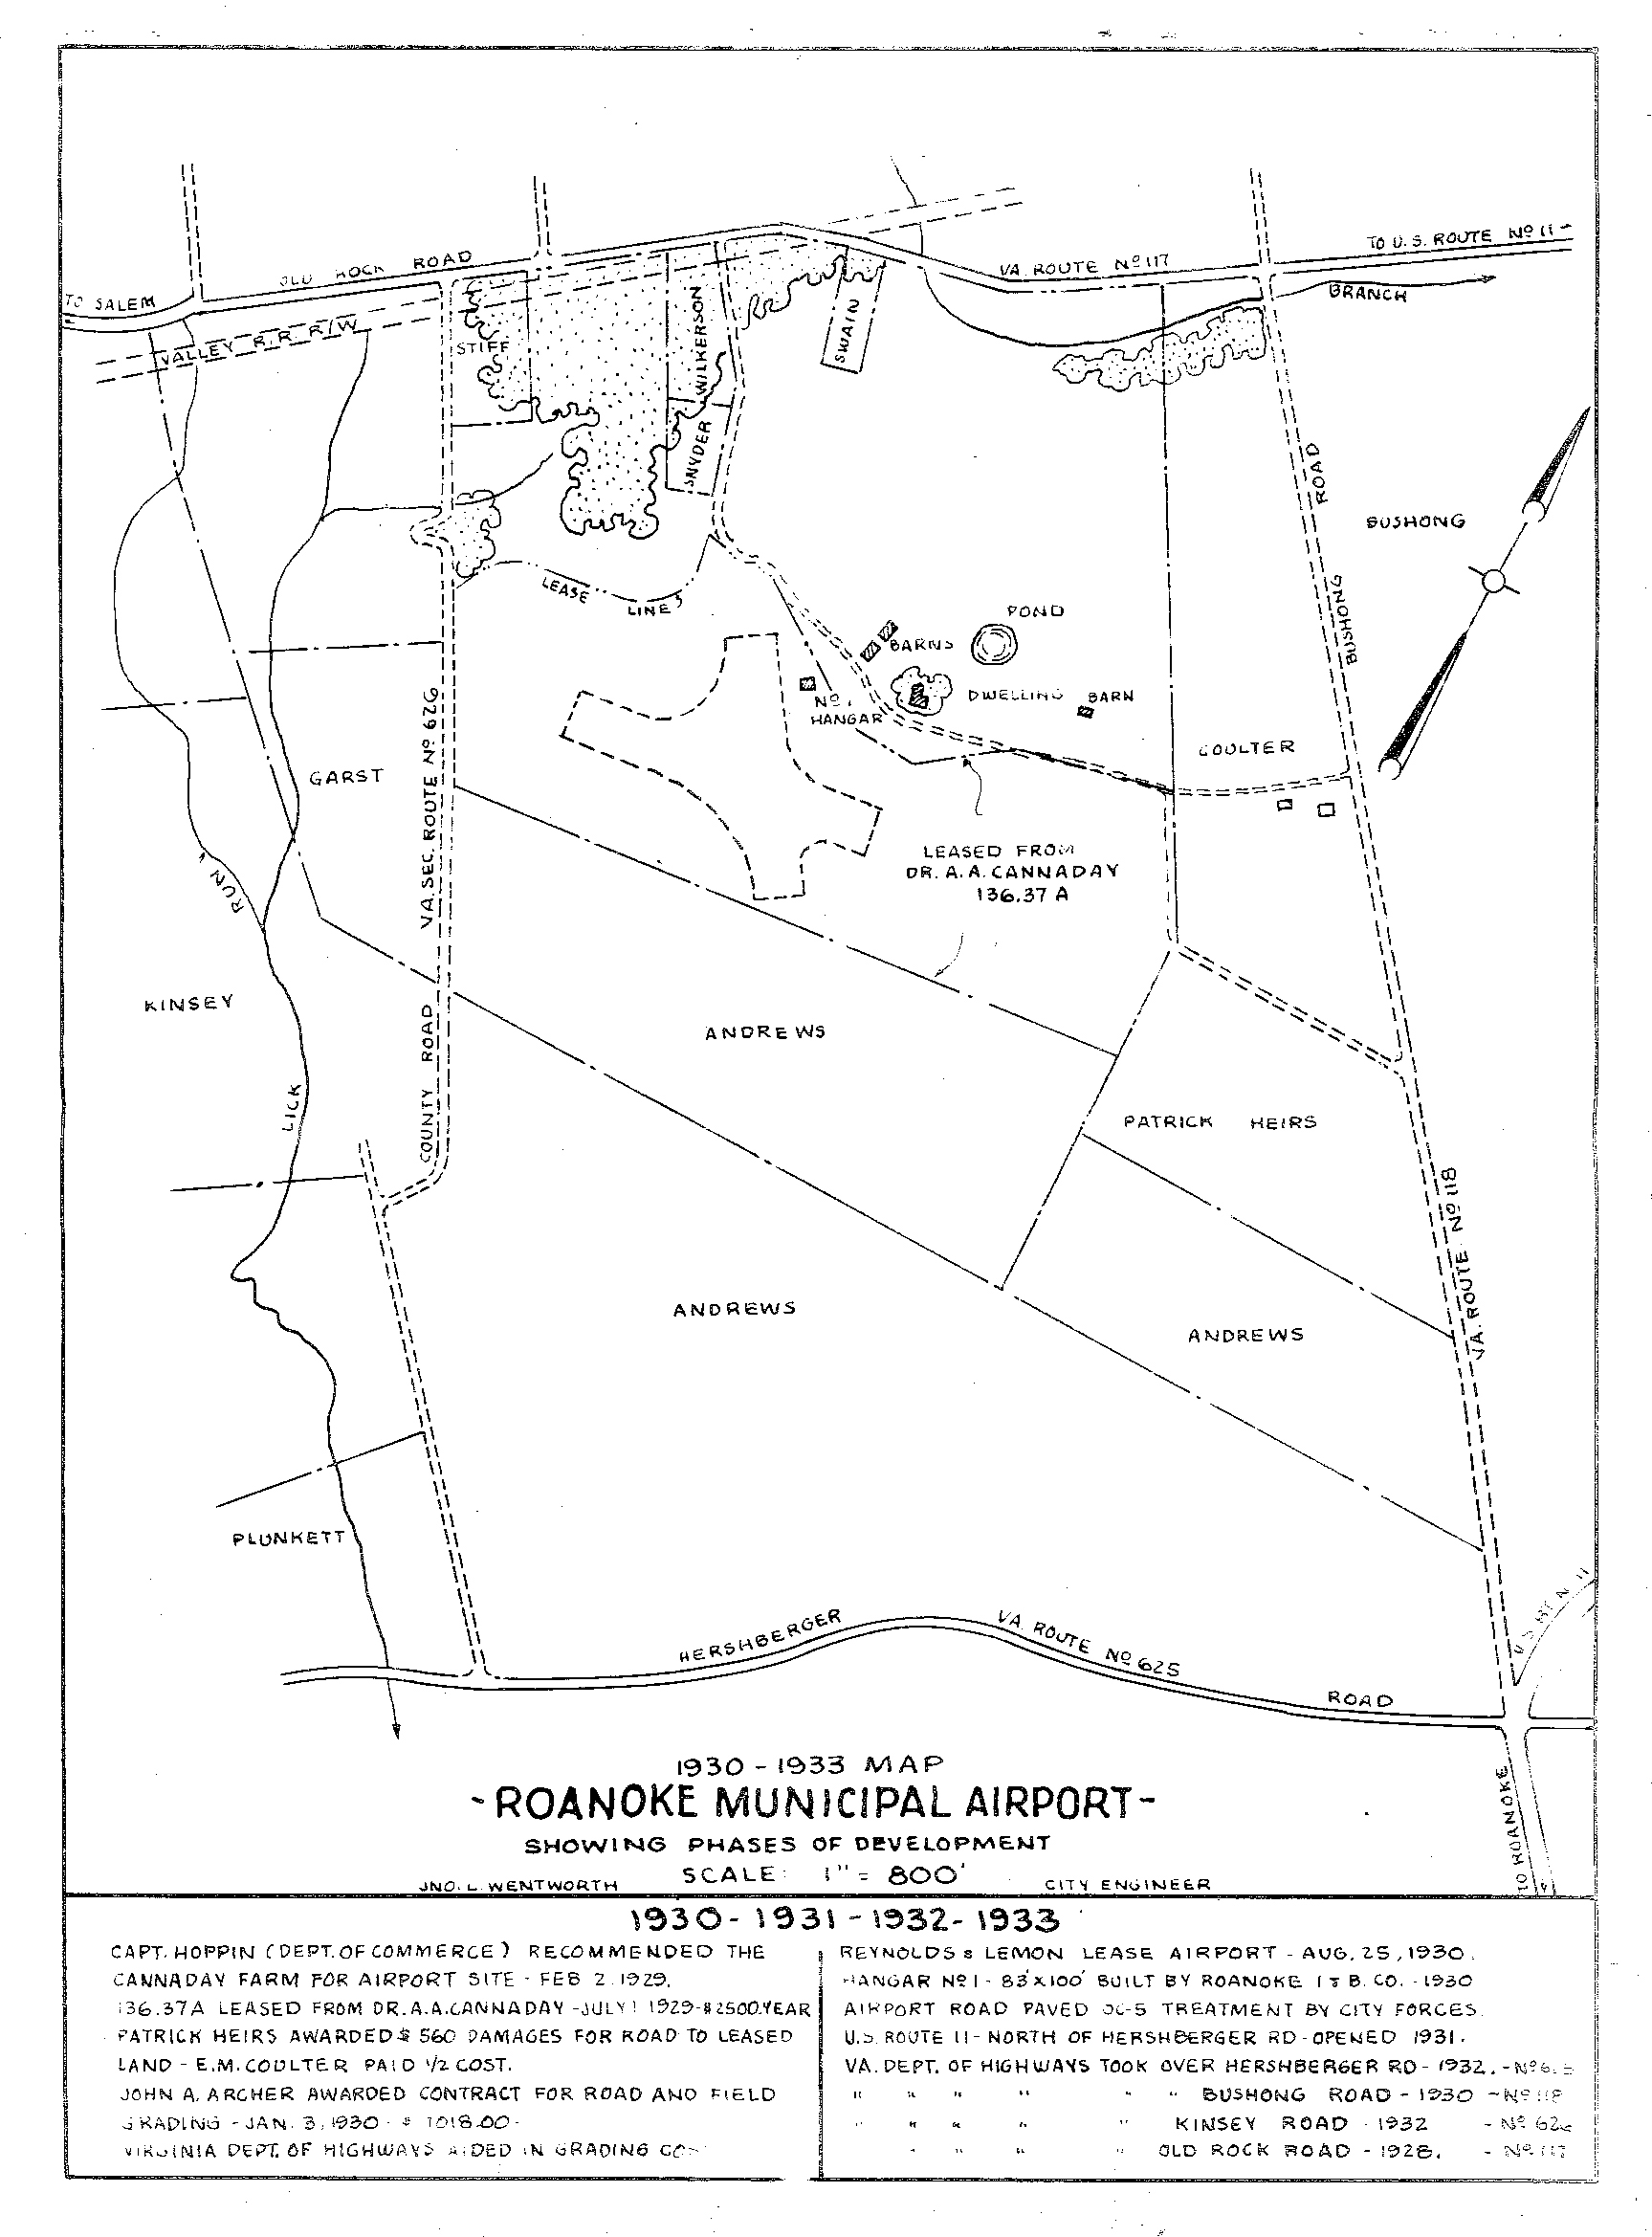 RAC58 1930-33 Map.jpg